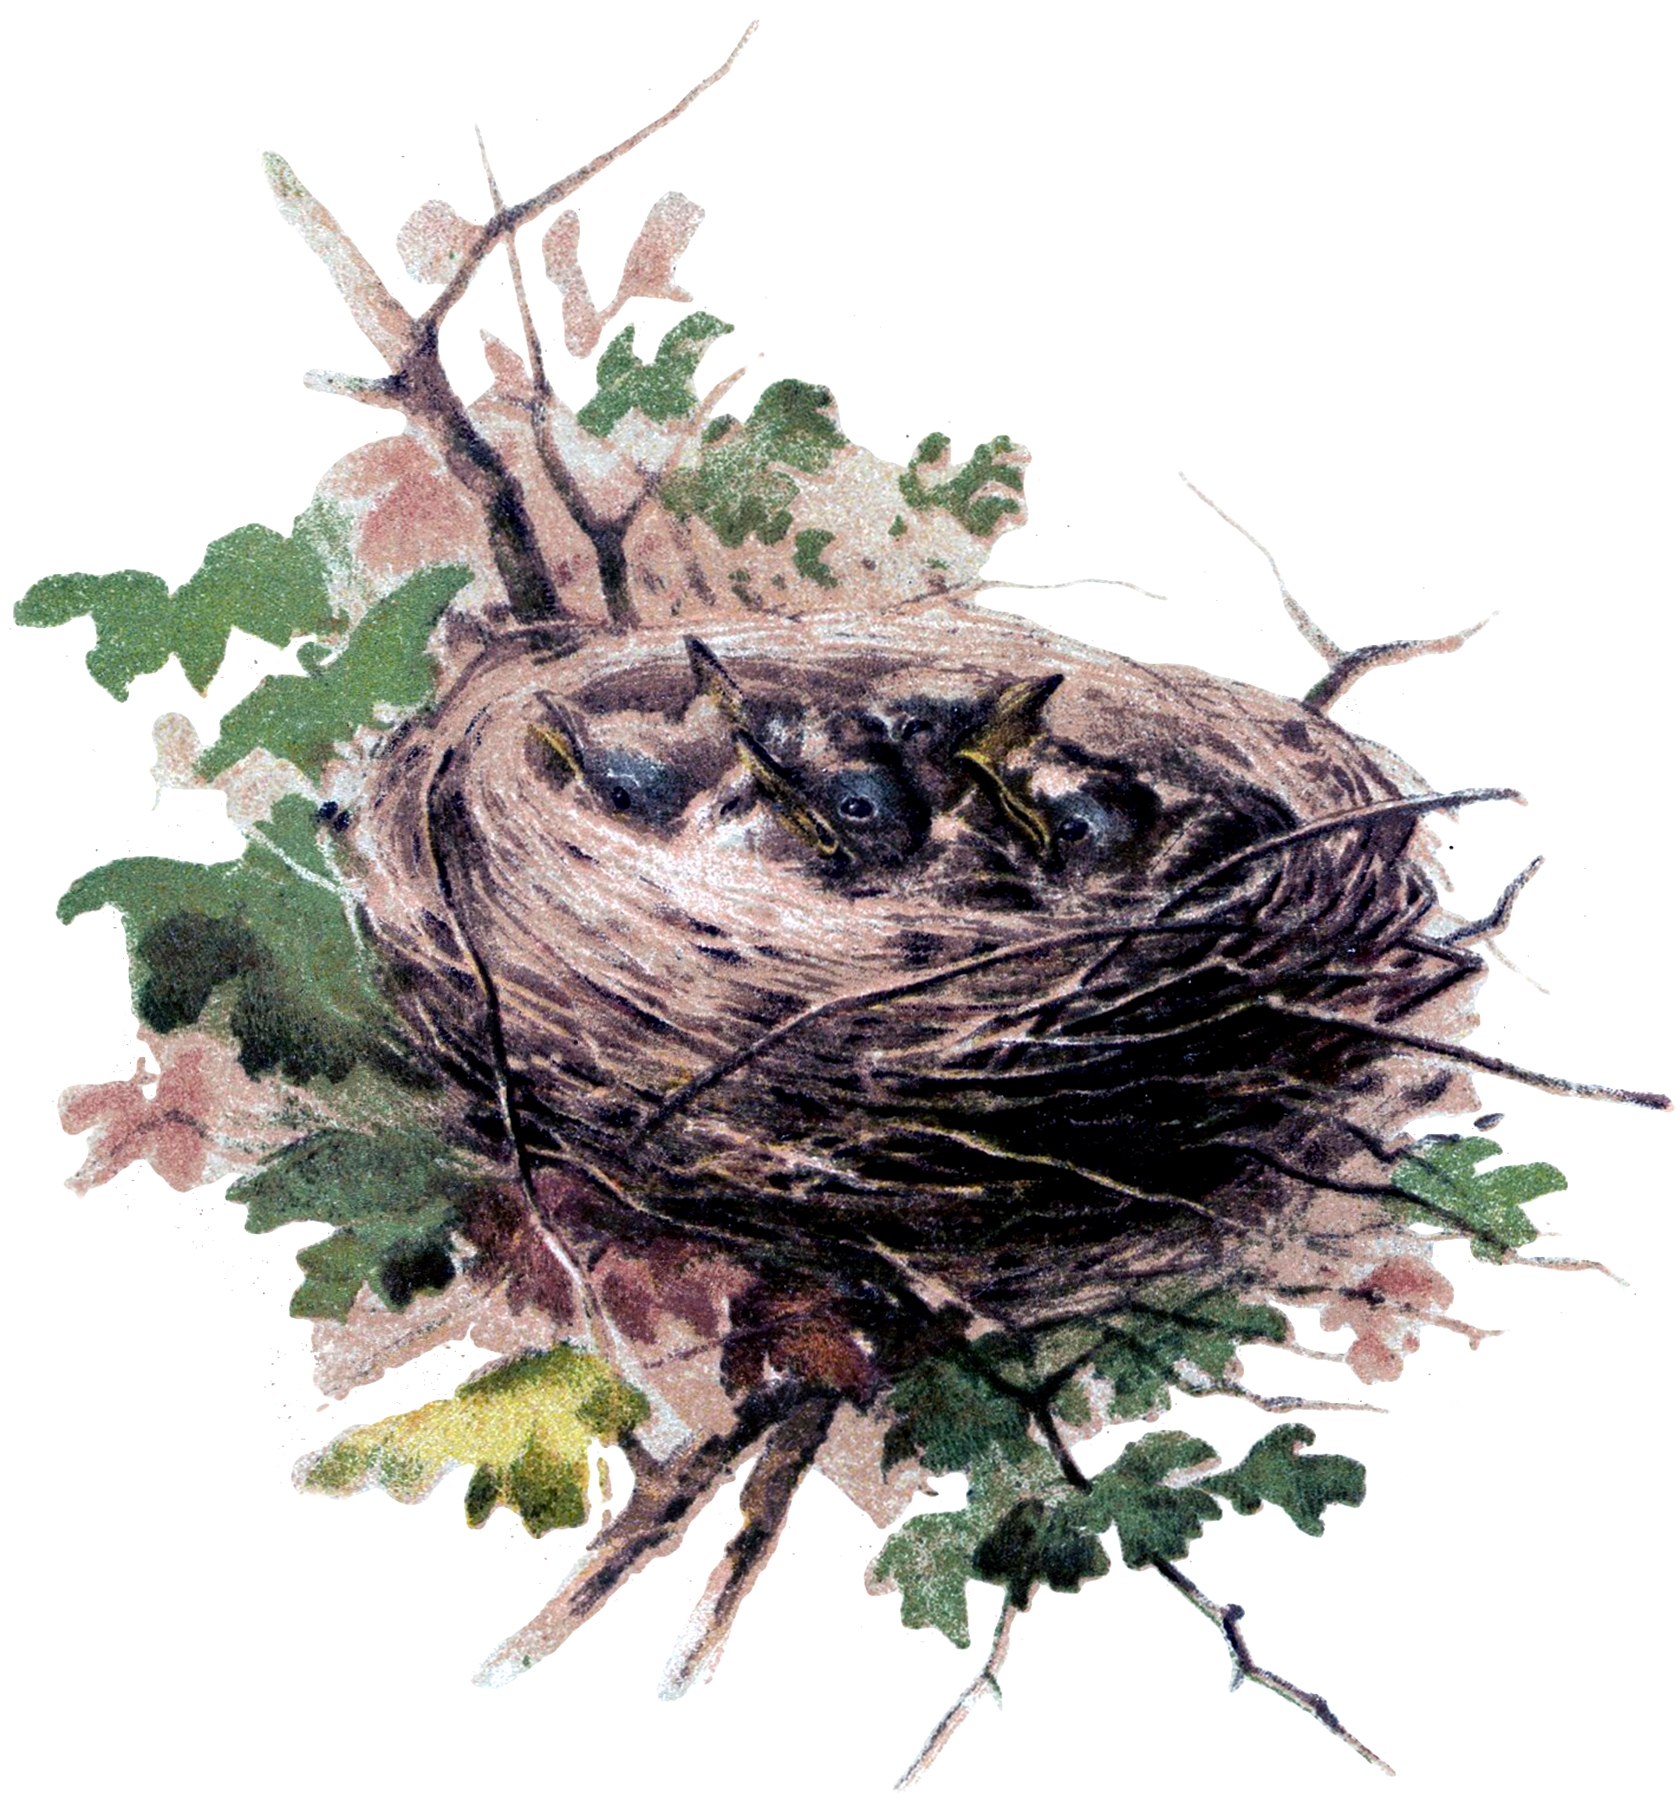 Their nests. Грачата в гнезде. Гнездо Грача с птенцами для детей. Гнездо на дереве. Птичье гнездо.